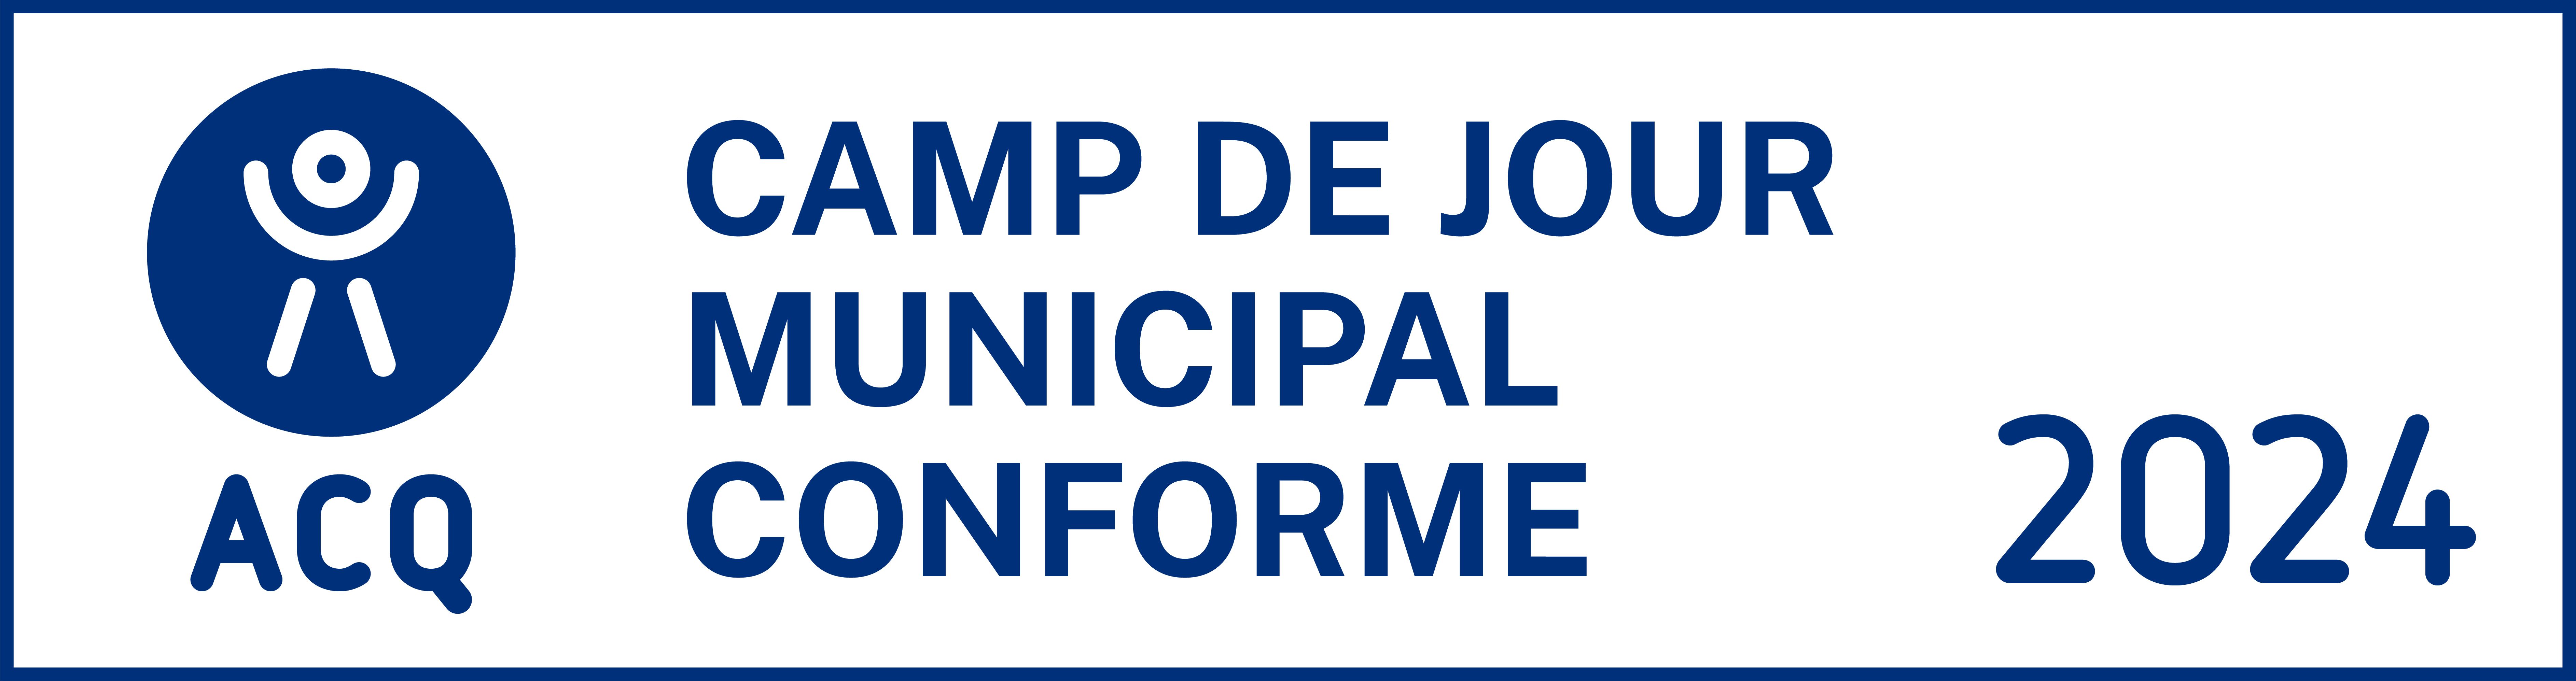 Logo camp de jour municipal conforme 2024